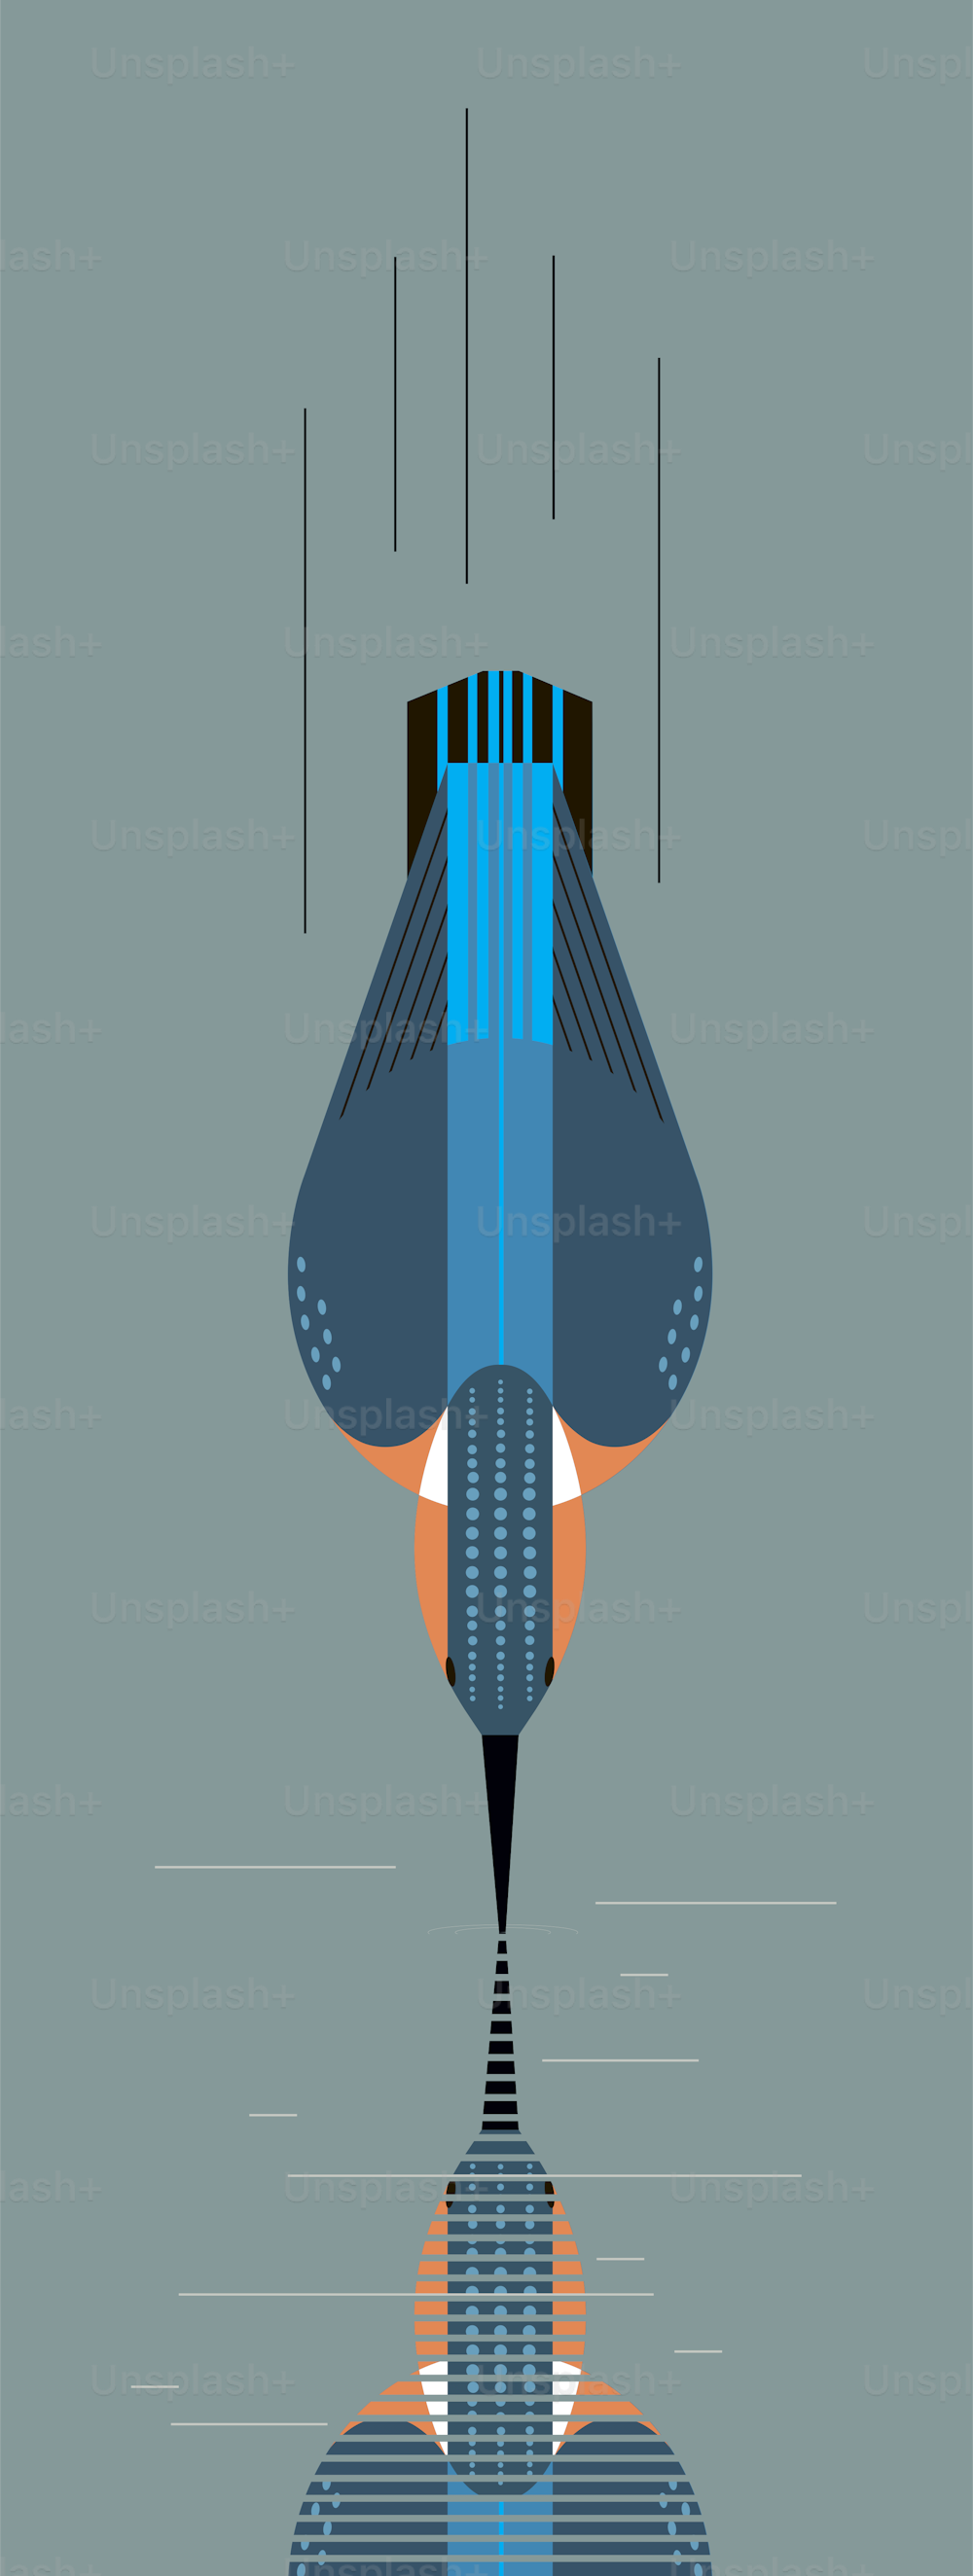 Kingfisher는 먹이, 최소한의 기하학적 스타일을 위해 다이빙합니다.